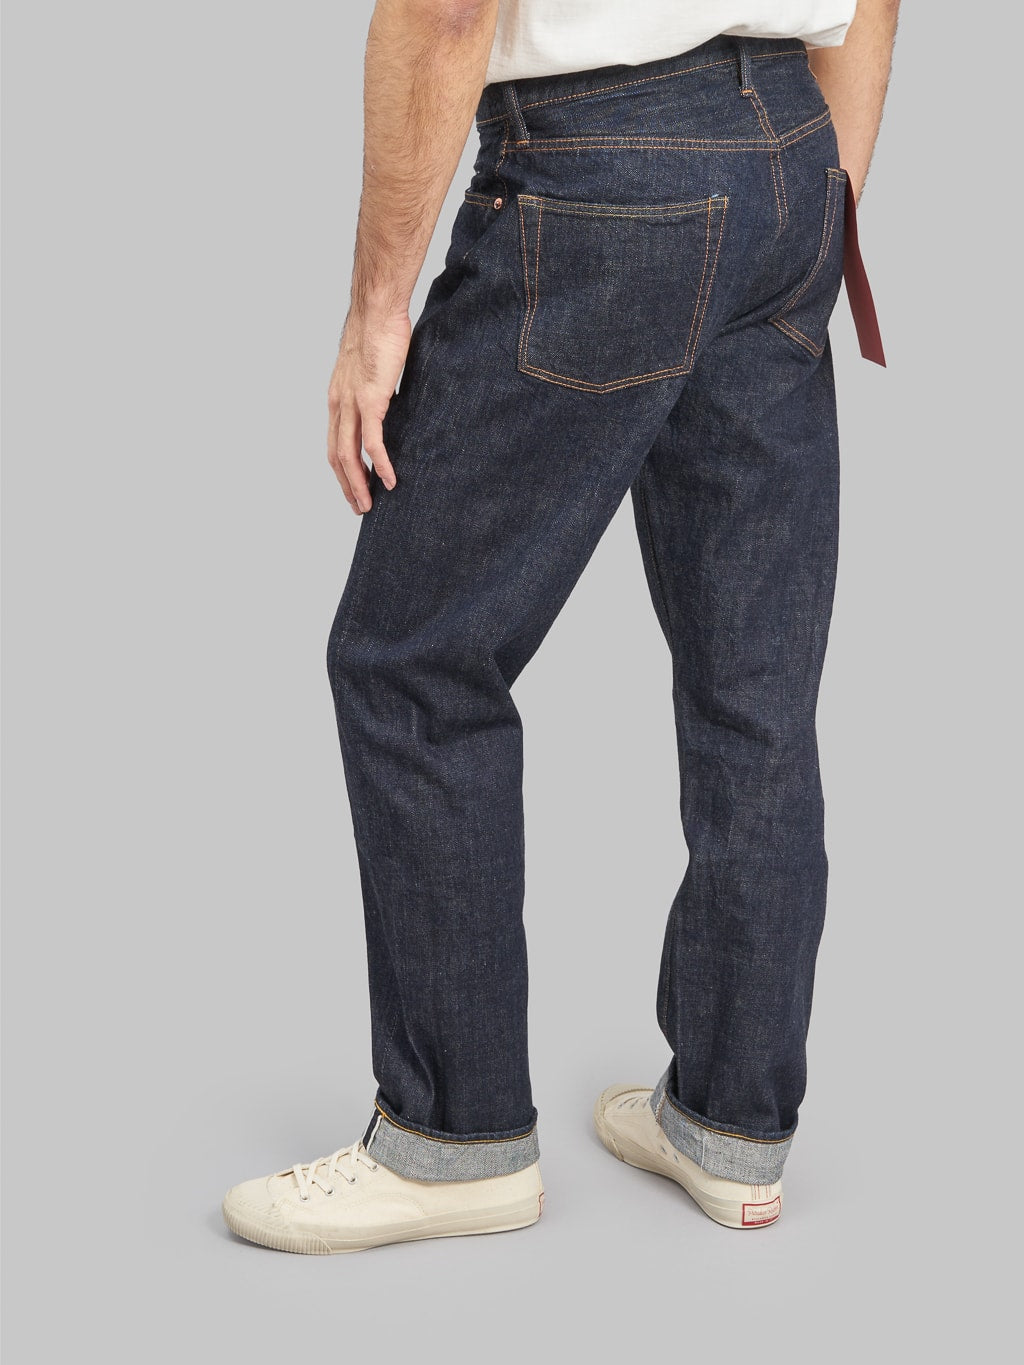 fullcount 1103 clean straight selvedge denim jeans fitting